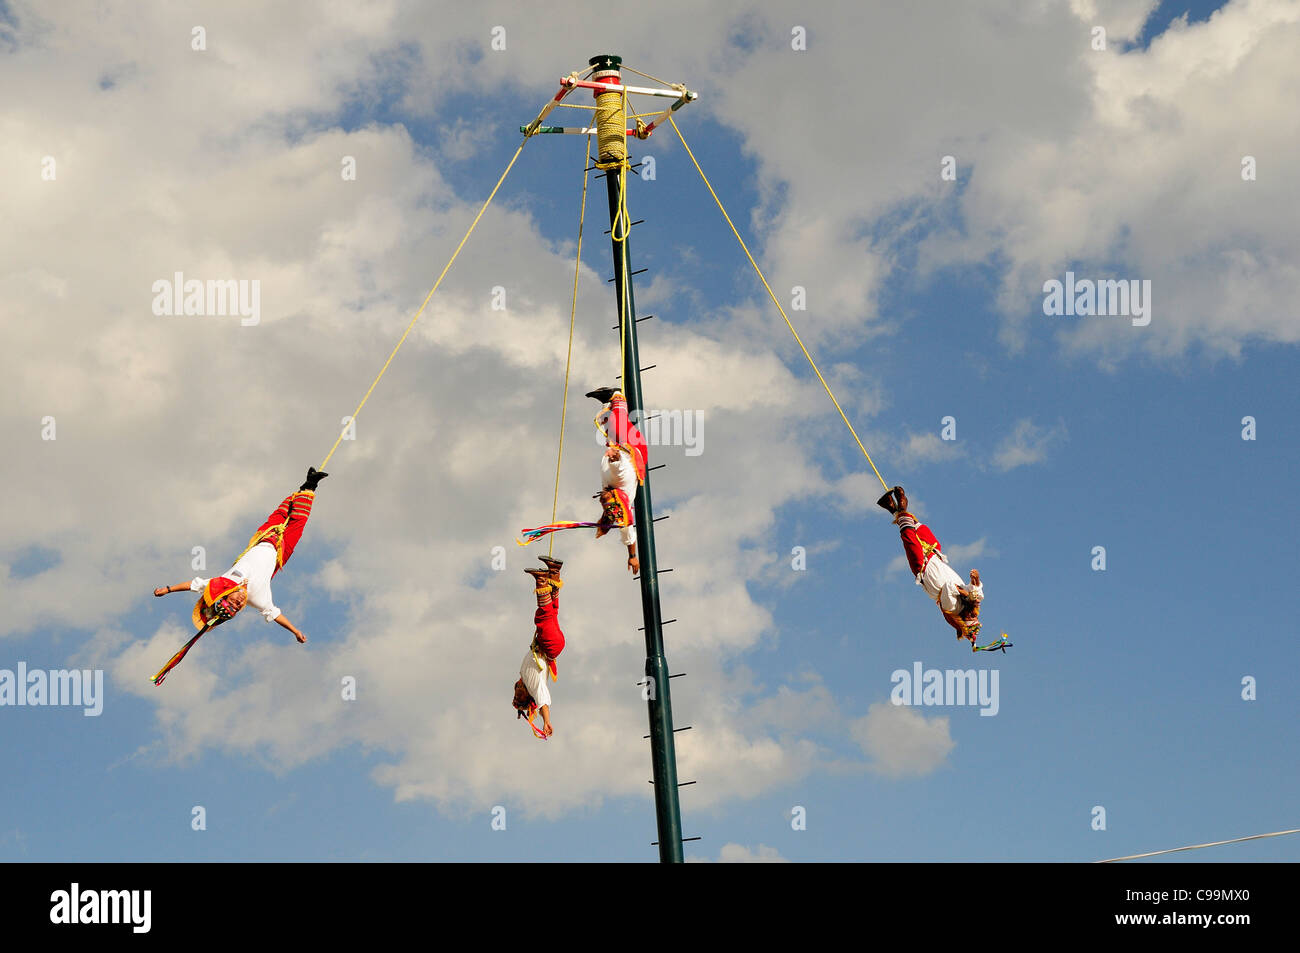 Mexico, Bajio, Zacatecas, Voladores de Papantla or Flying Men show during  Feria or Fair Stock Photo - Alamy